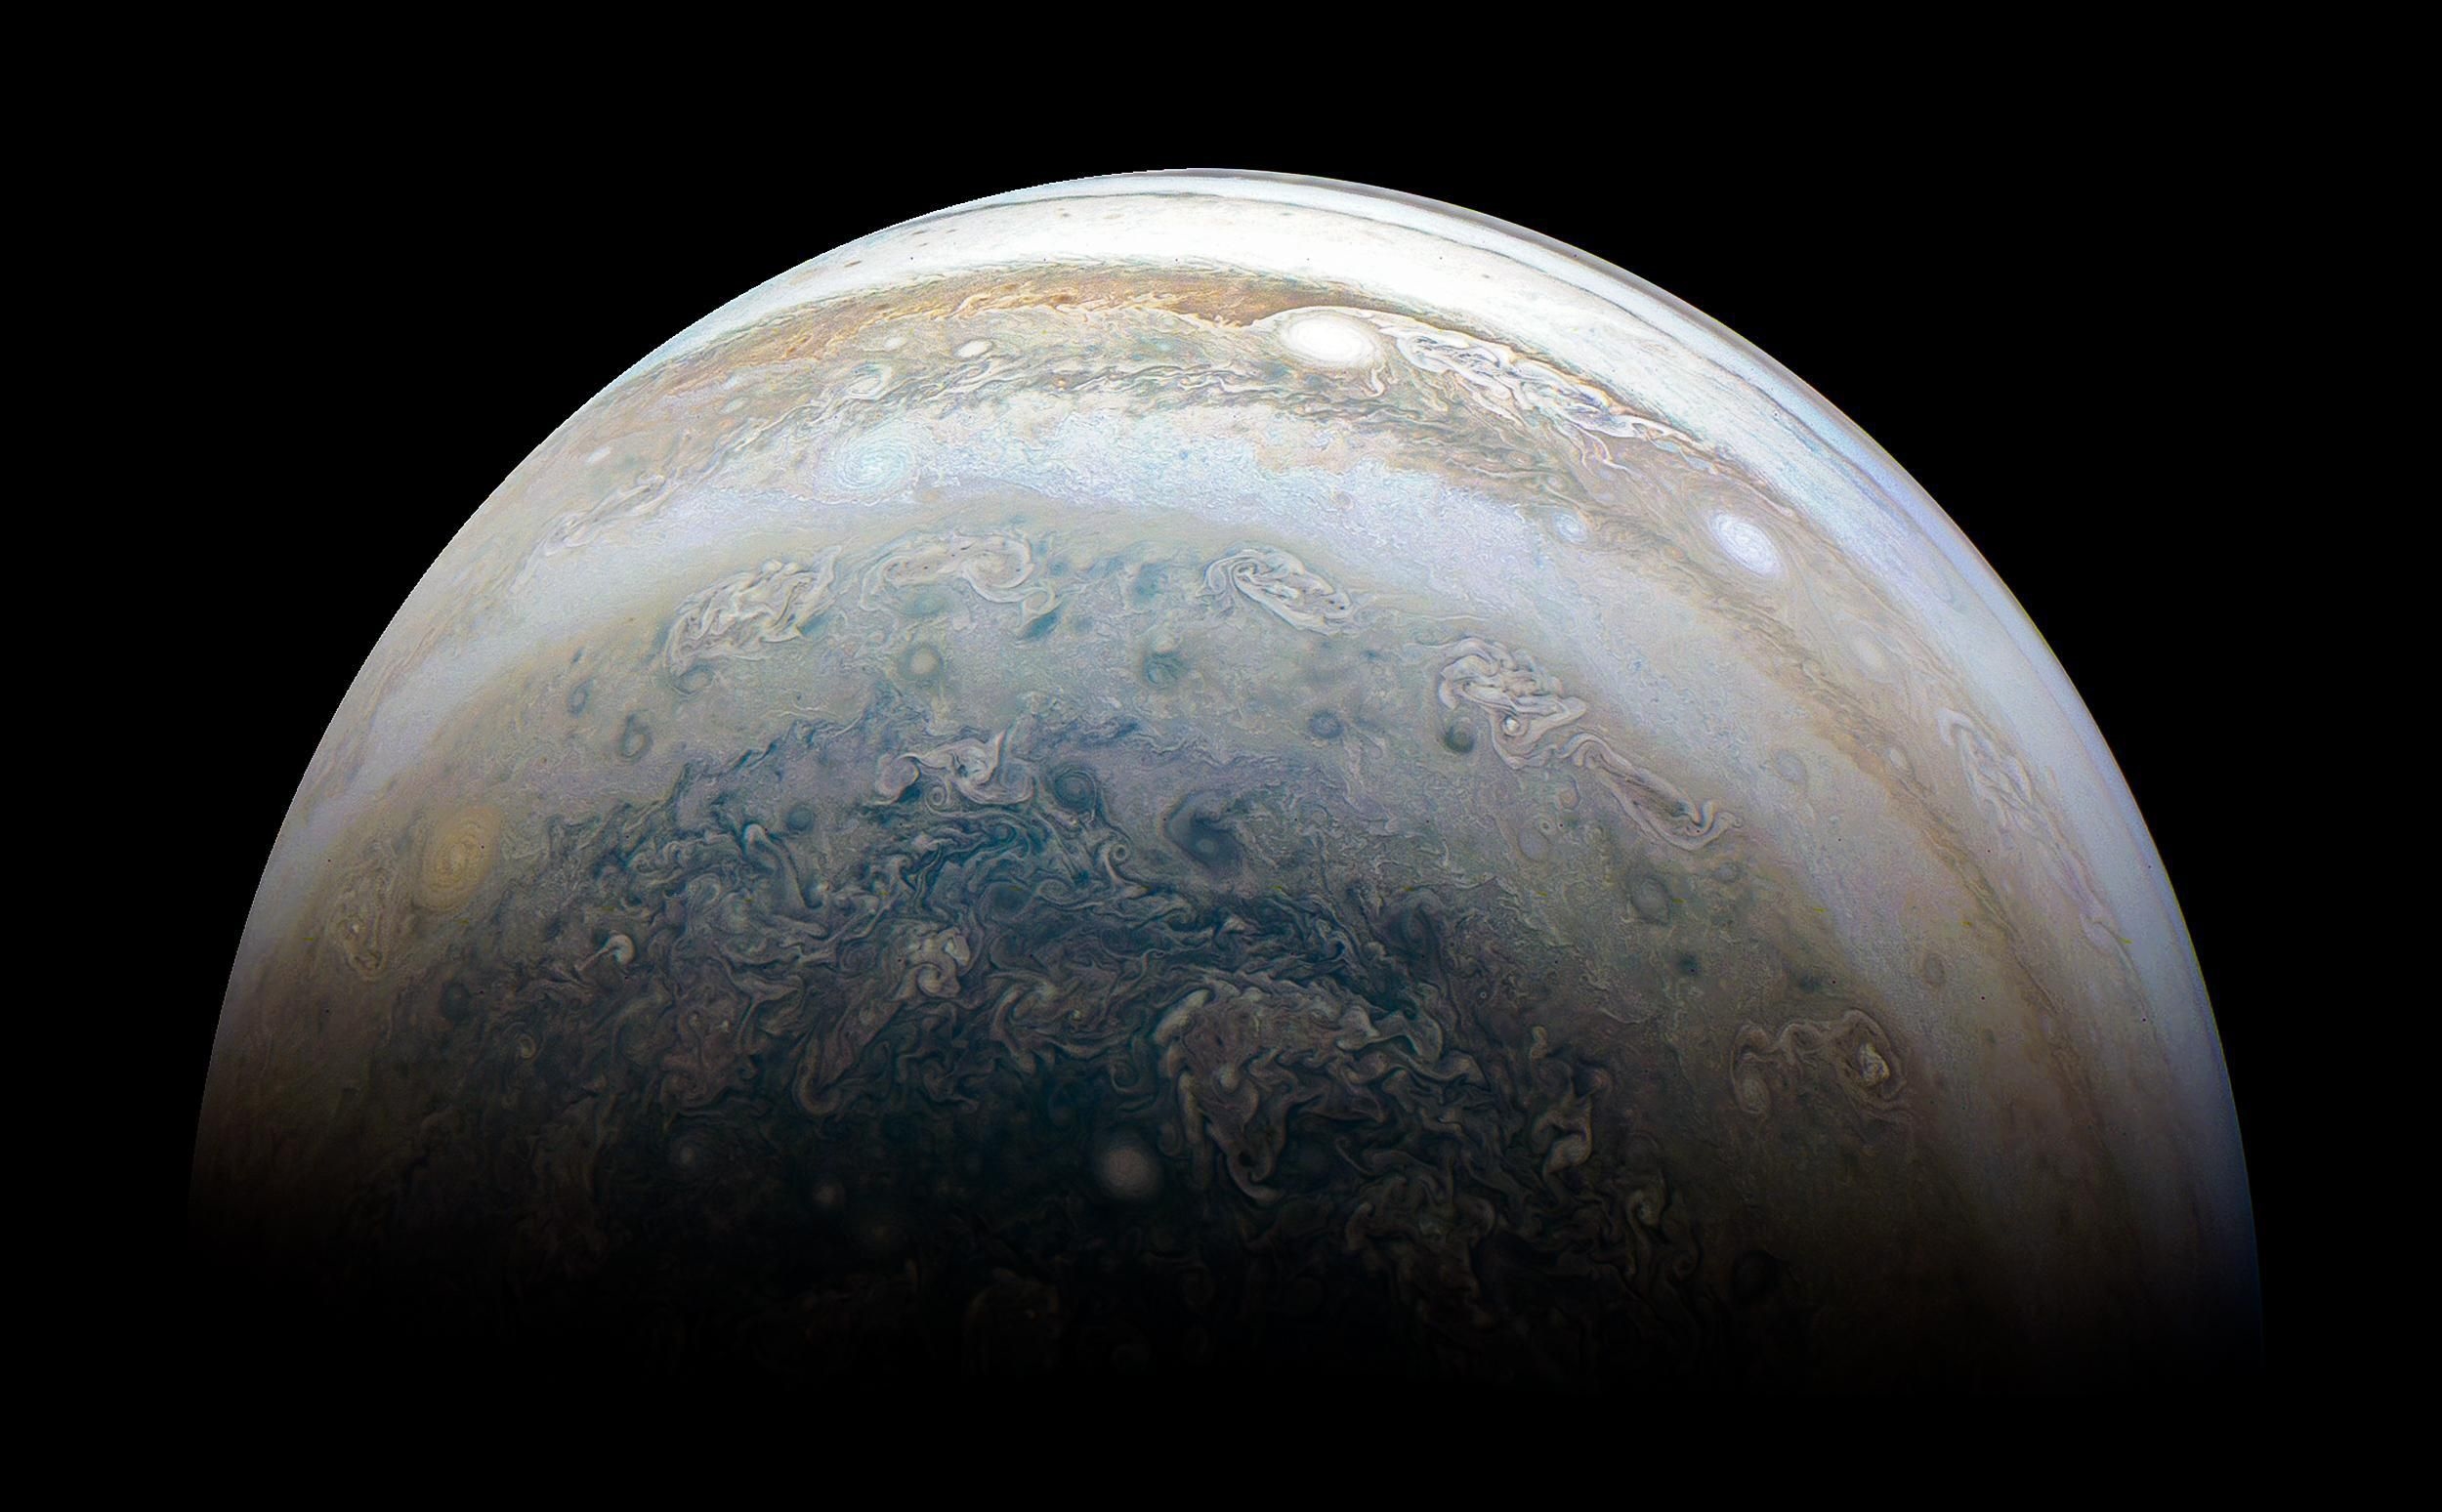 nasa公布朱诺号探测器发回最新木星拍摄图像,氨水混成